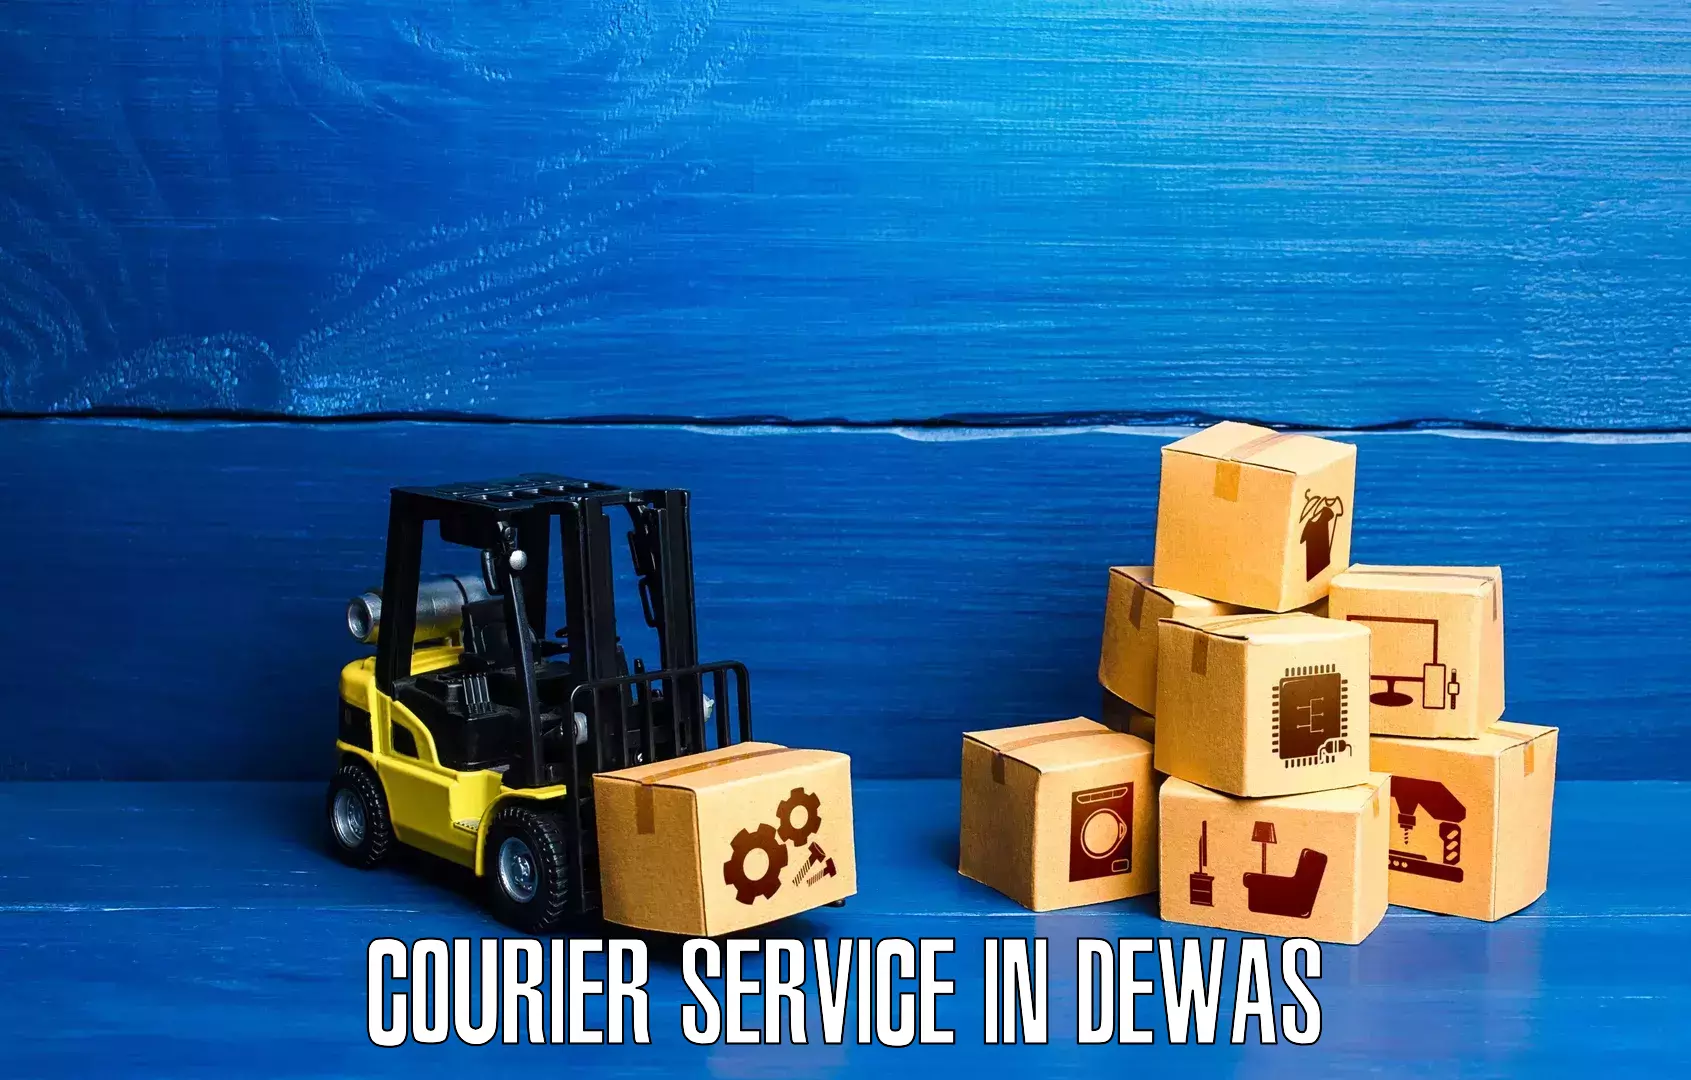 High-capacity parcel service in Dewas